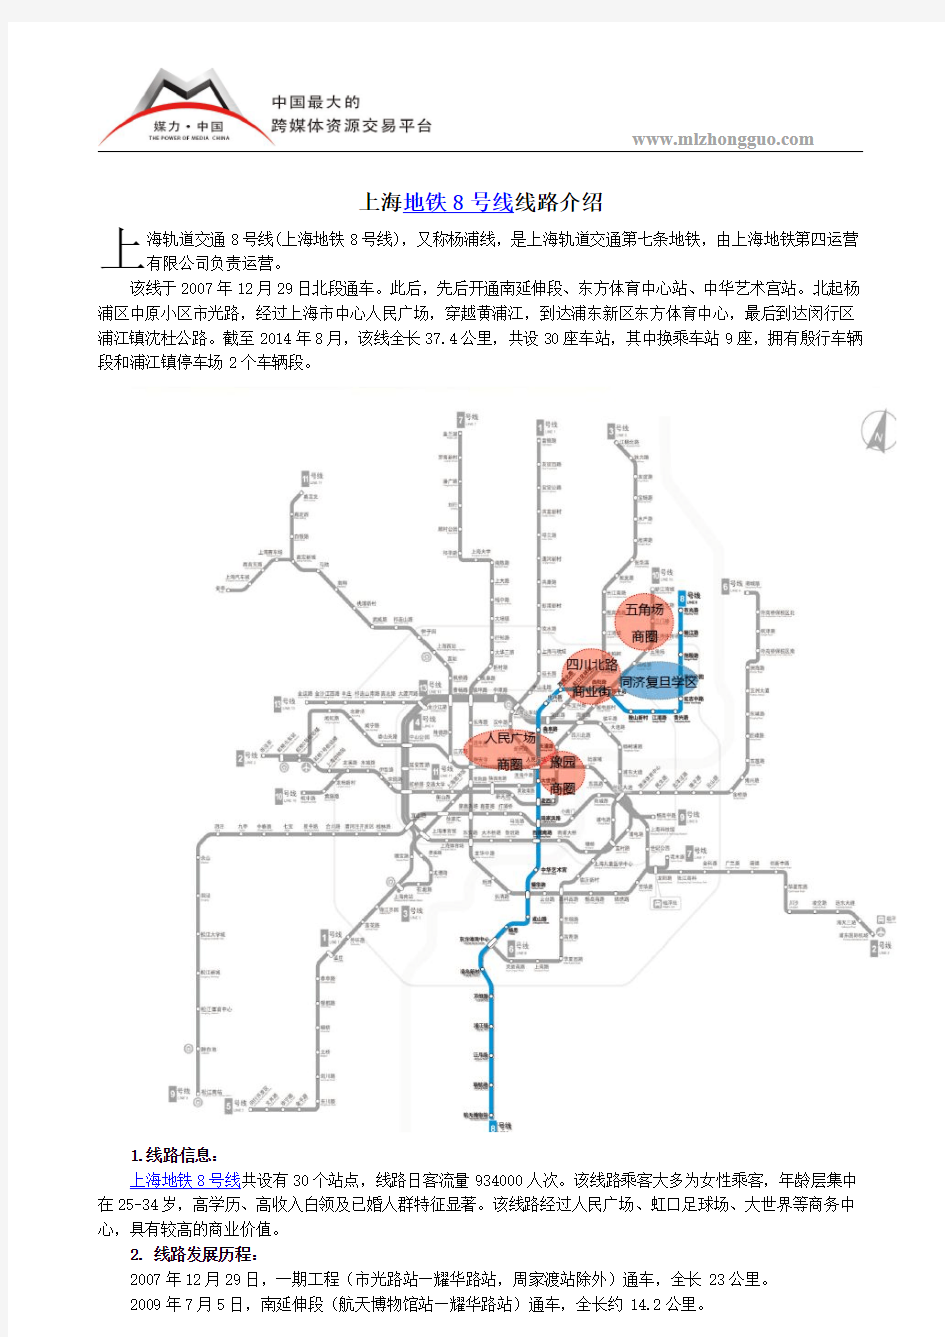 上海地铁8号线线路介绍